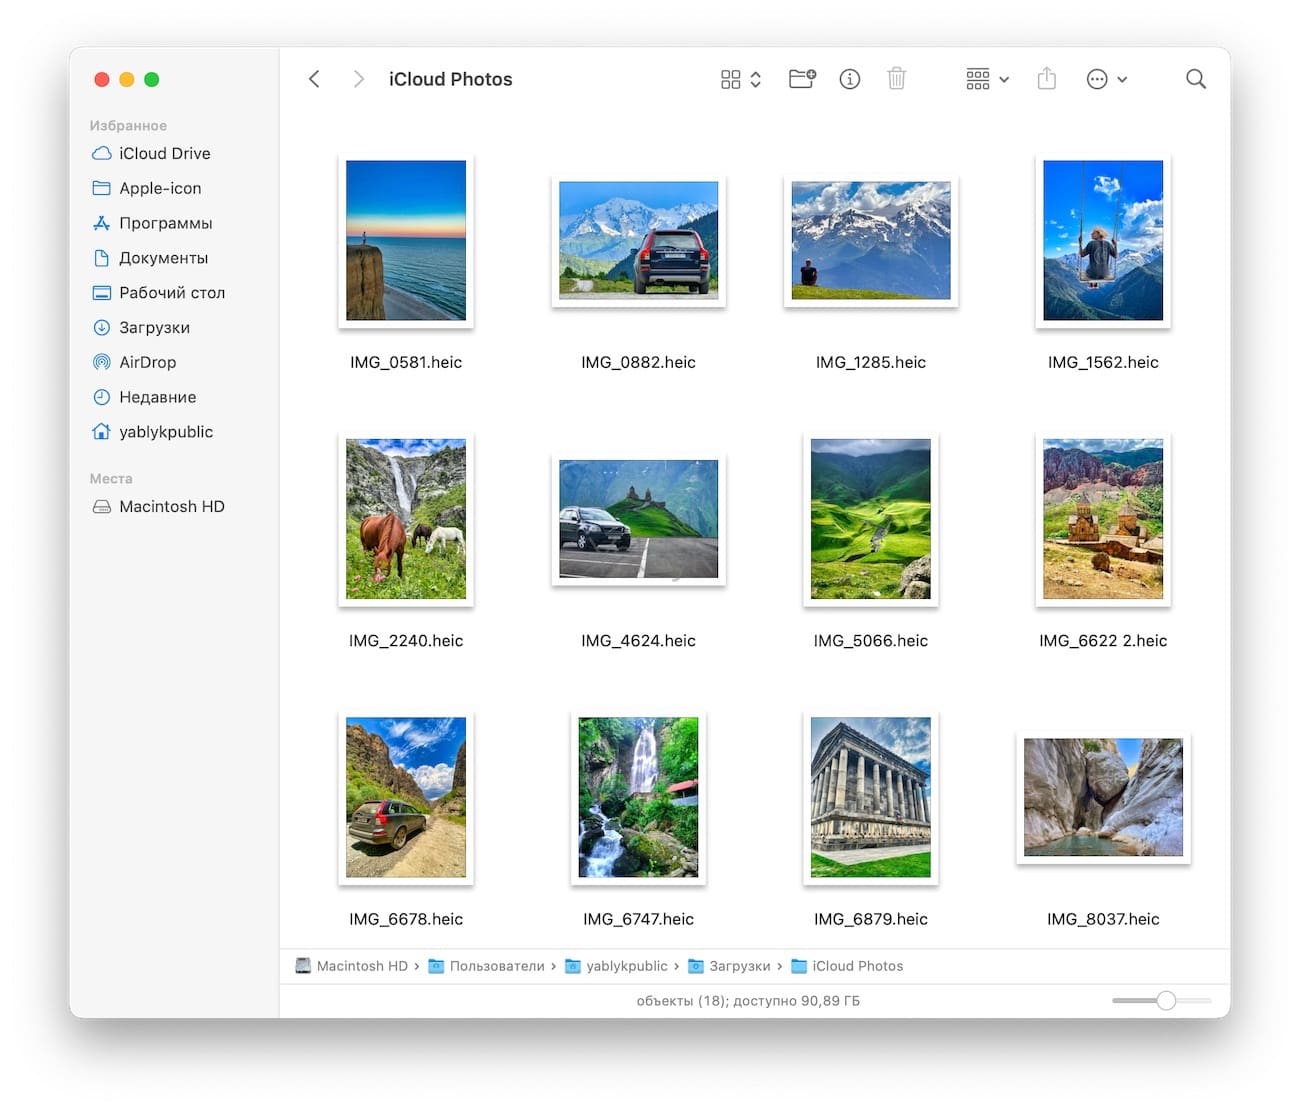 Как загрузить изображения с iCloud.com на Mac и ПК?